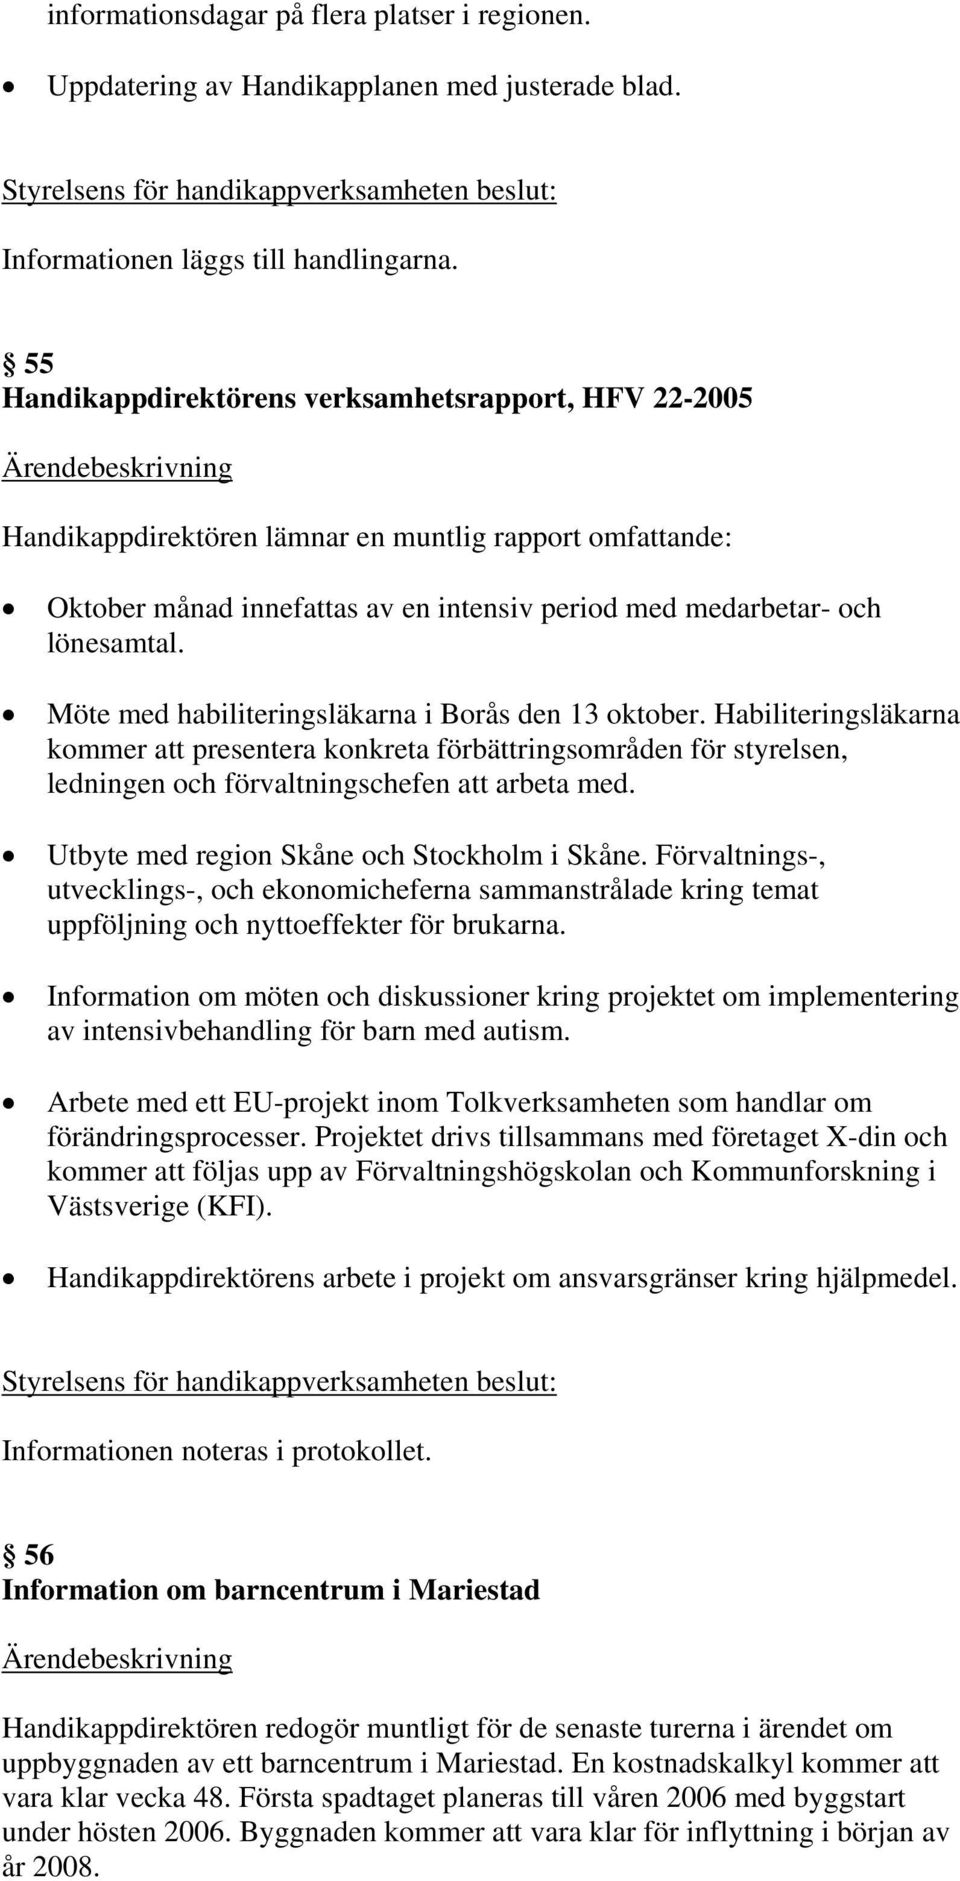 Möte med habiliteringsläkarna i Borås den 13 oktober. Habiliteringsläkarna kommer att presentera konkreta förbättringsområden för styrelsen, ledningen och förvaltningschefen att arbeta med.